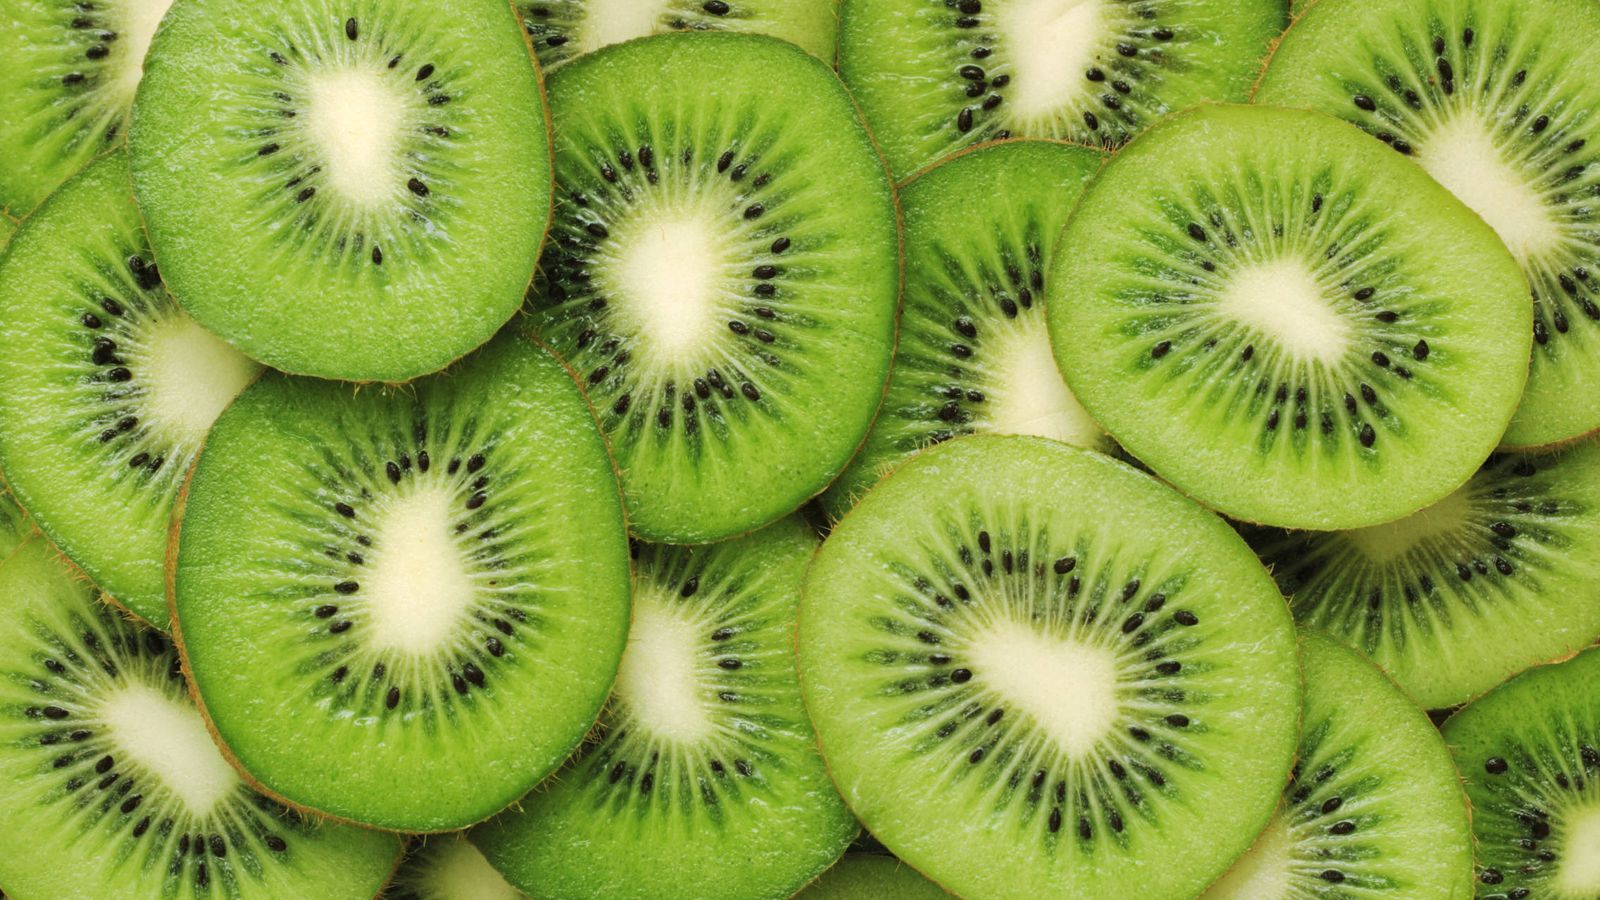 Foto: El kiwi es uno de los alimentos más ricos en vitamina C. (iStock)